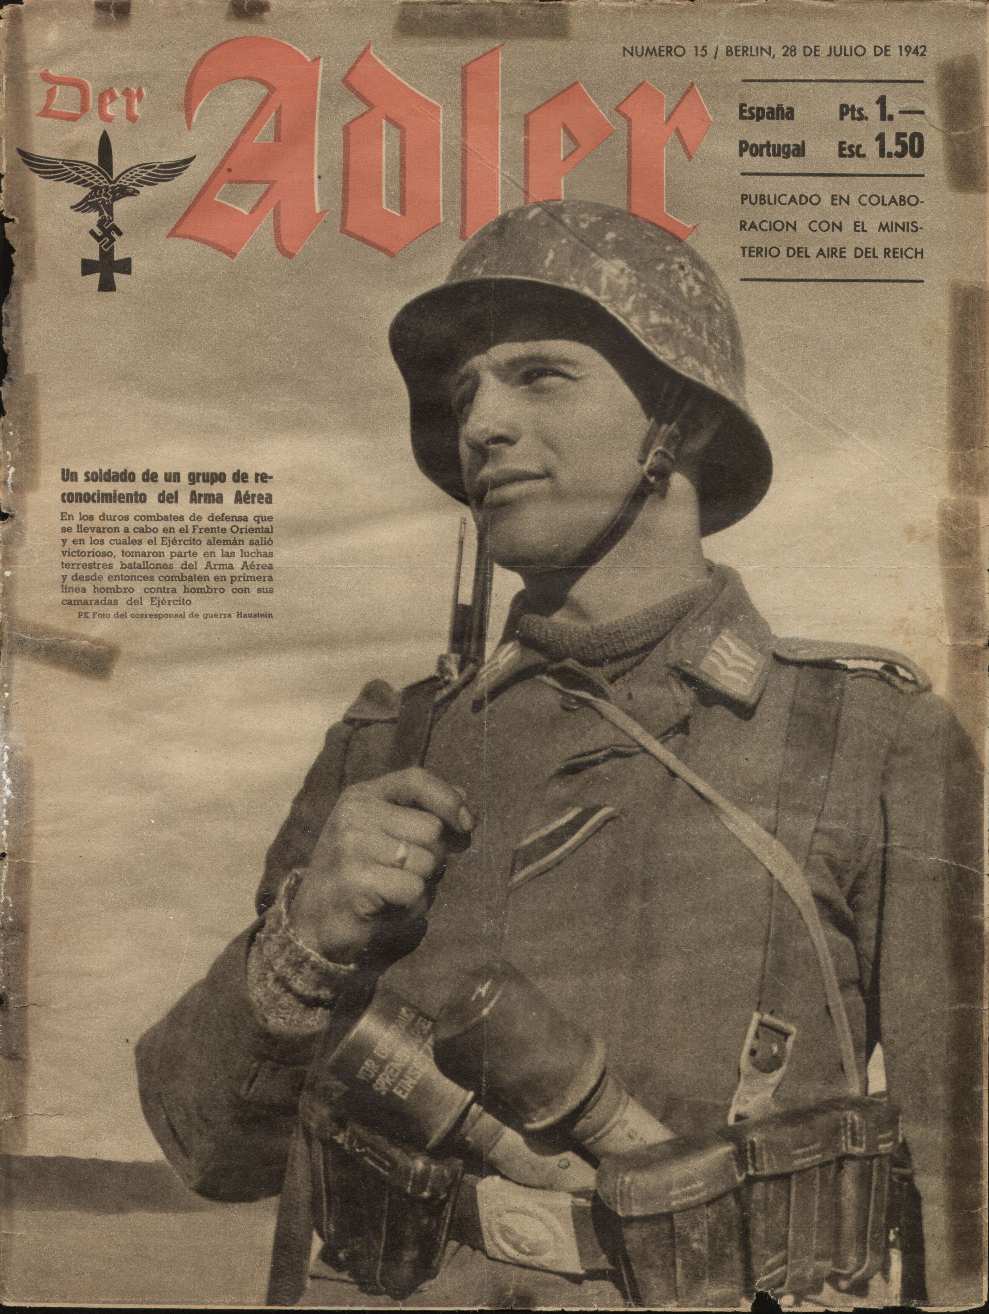 Der Adler журнал. Die Wehrmacht журнал 1942. Журнал Адлер 3 Рейх. Немецкие газеты времен войны. Российский вермахт